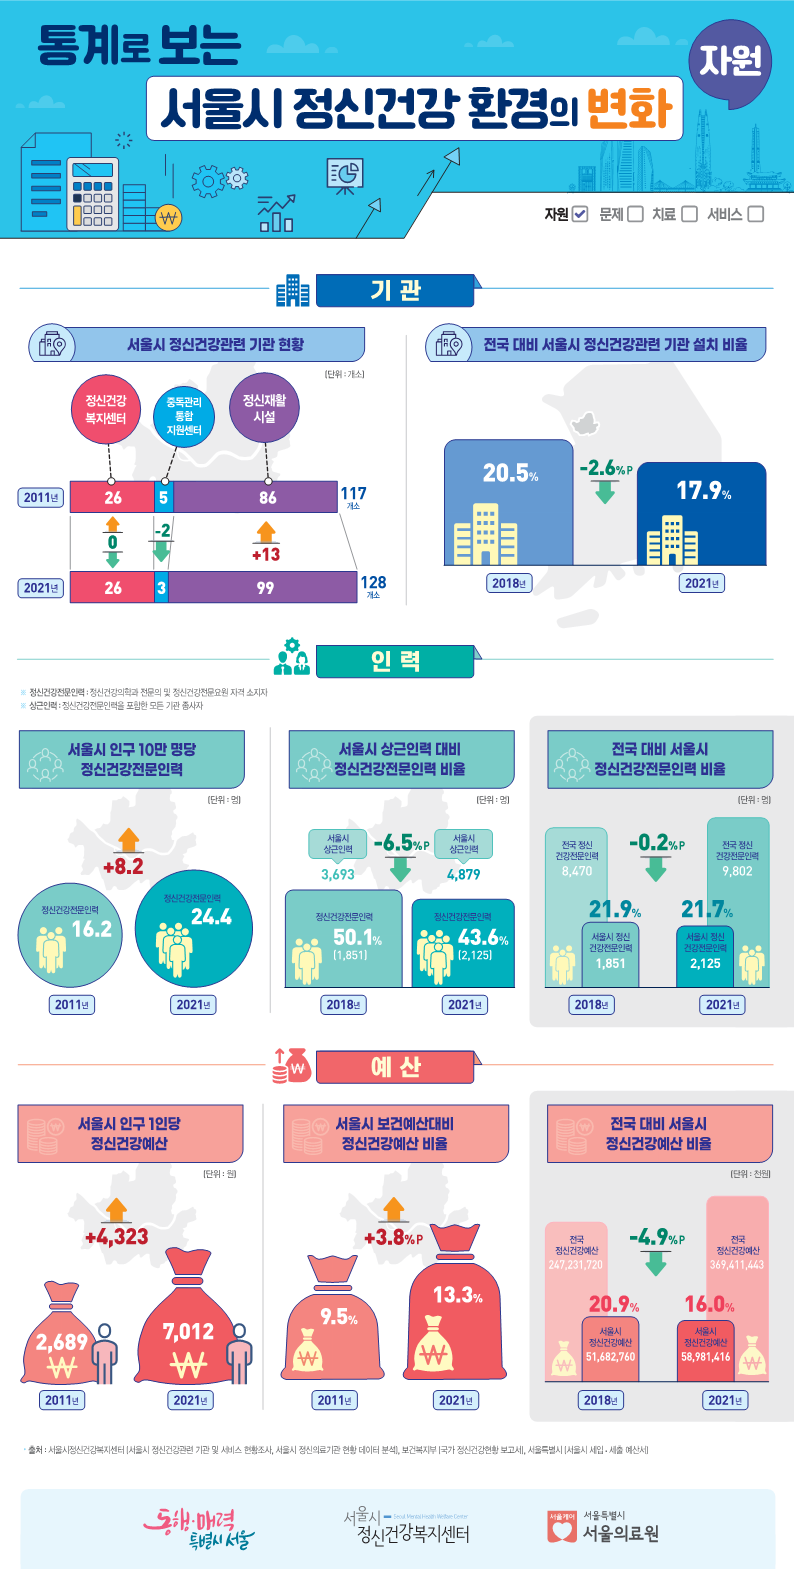 [인포그래픽] 통계로 보는 서울시 정신건강 환경의 변화 1.자원